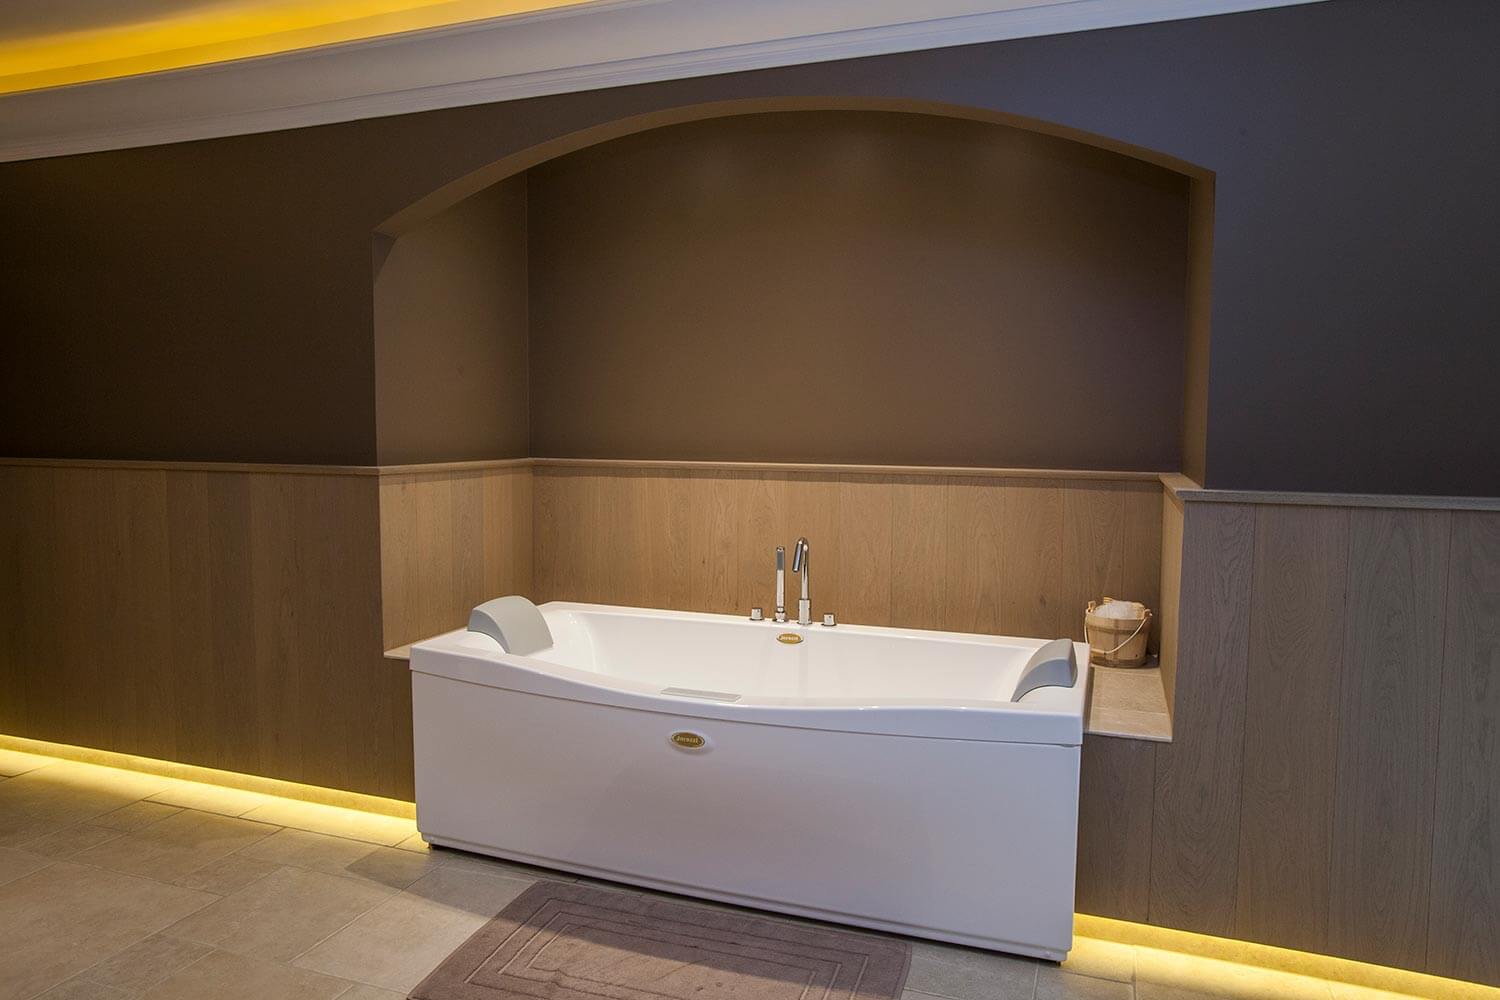 foto van bad in Wellness-ruimte. bruin geverfde muren, houten lambrisering en op de vloer beige, keramische tegels